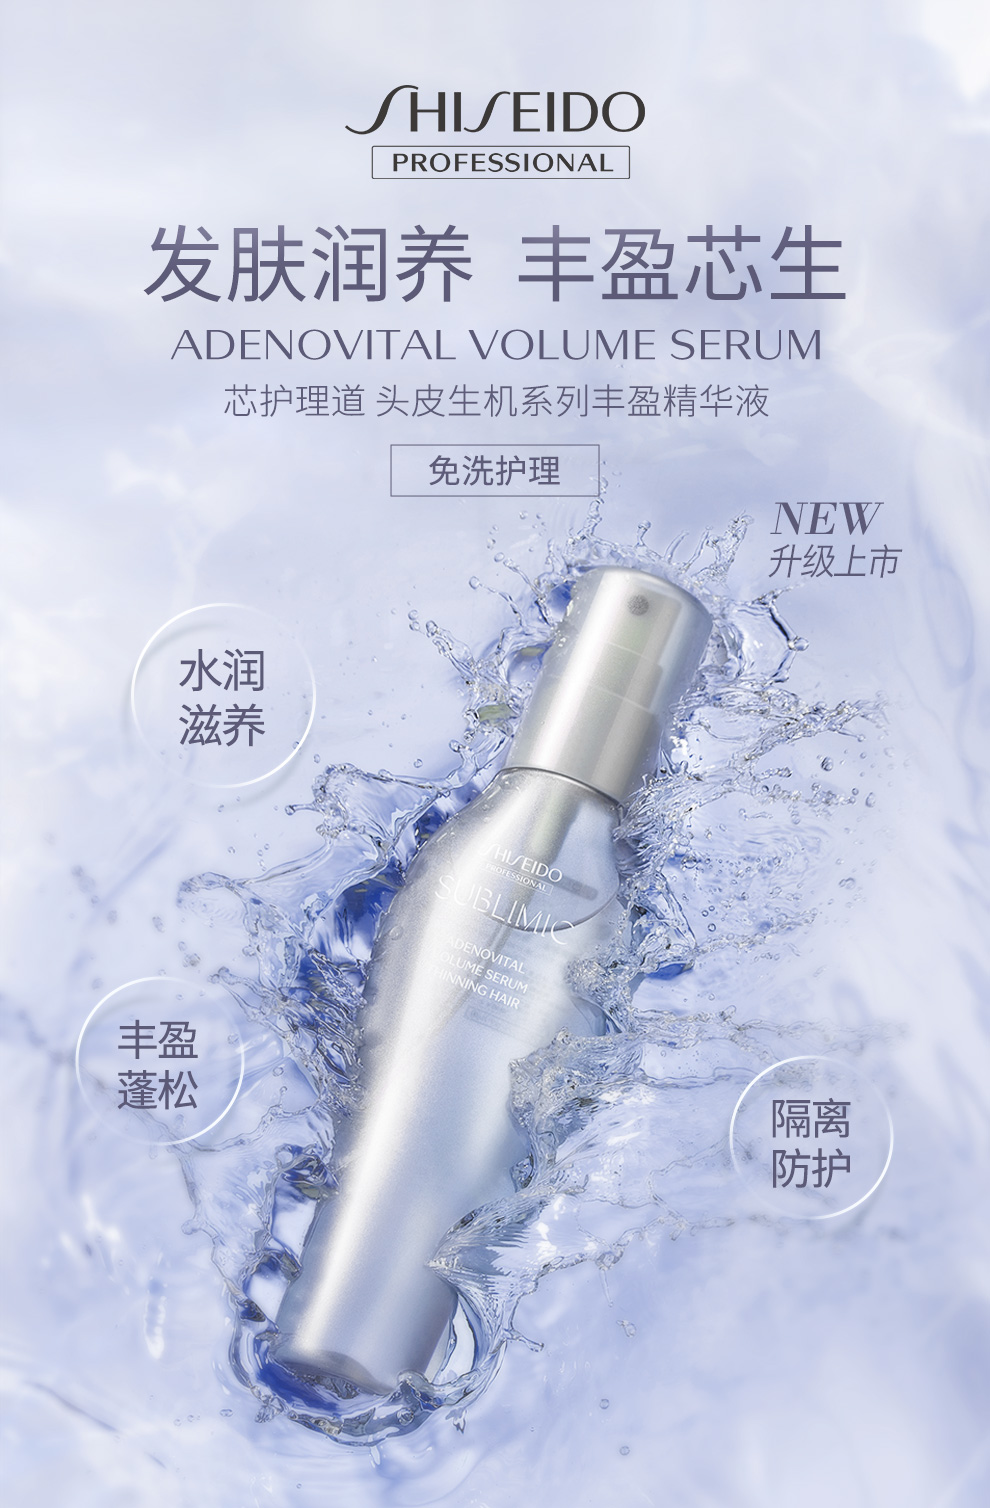 Shiseido không cũ Lin Dầu gội Chăm sóc nước Daoist Máy da Nhật Bản nhập khẩu Jiancheng chống rửa tinh chất dầu gội thơm lâu